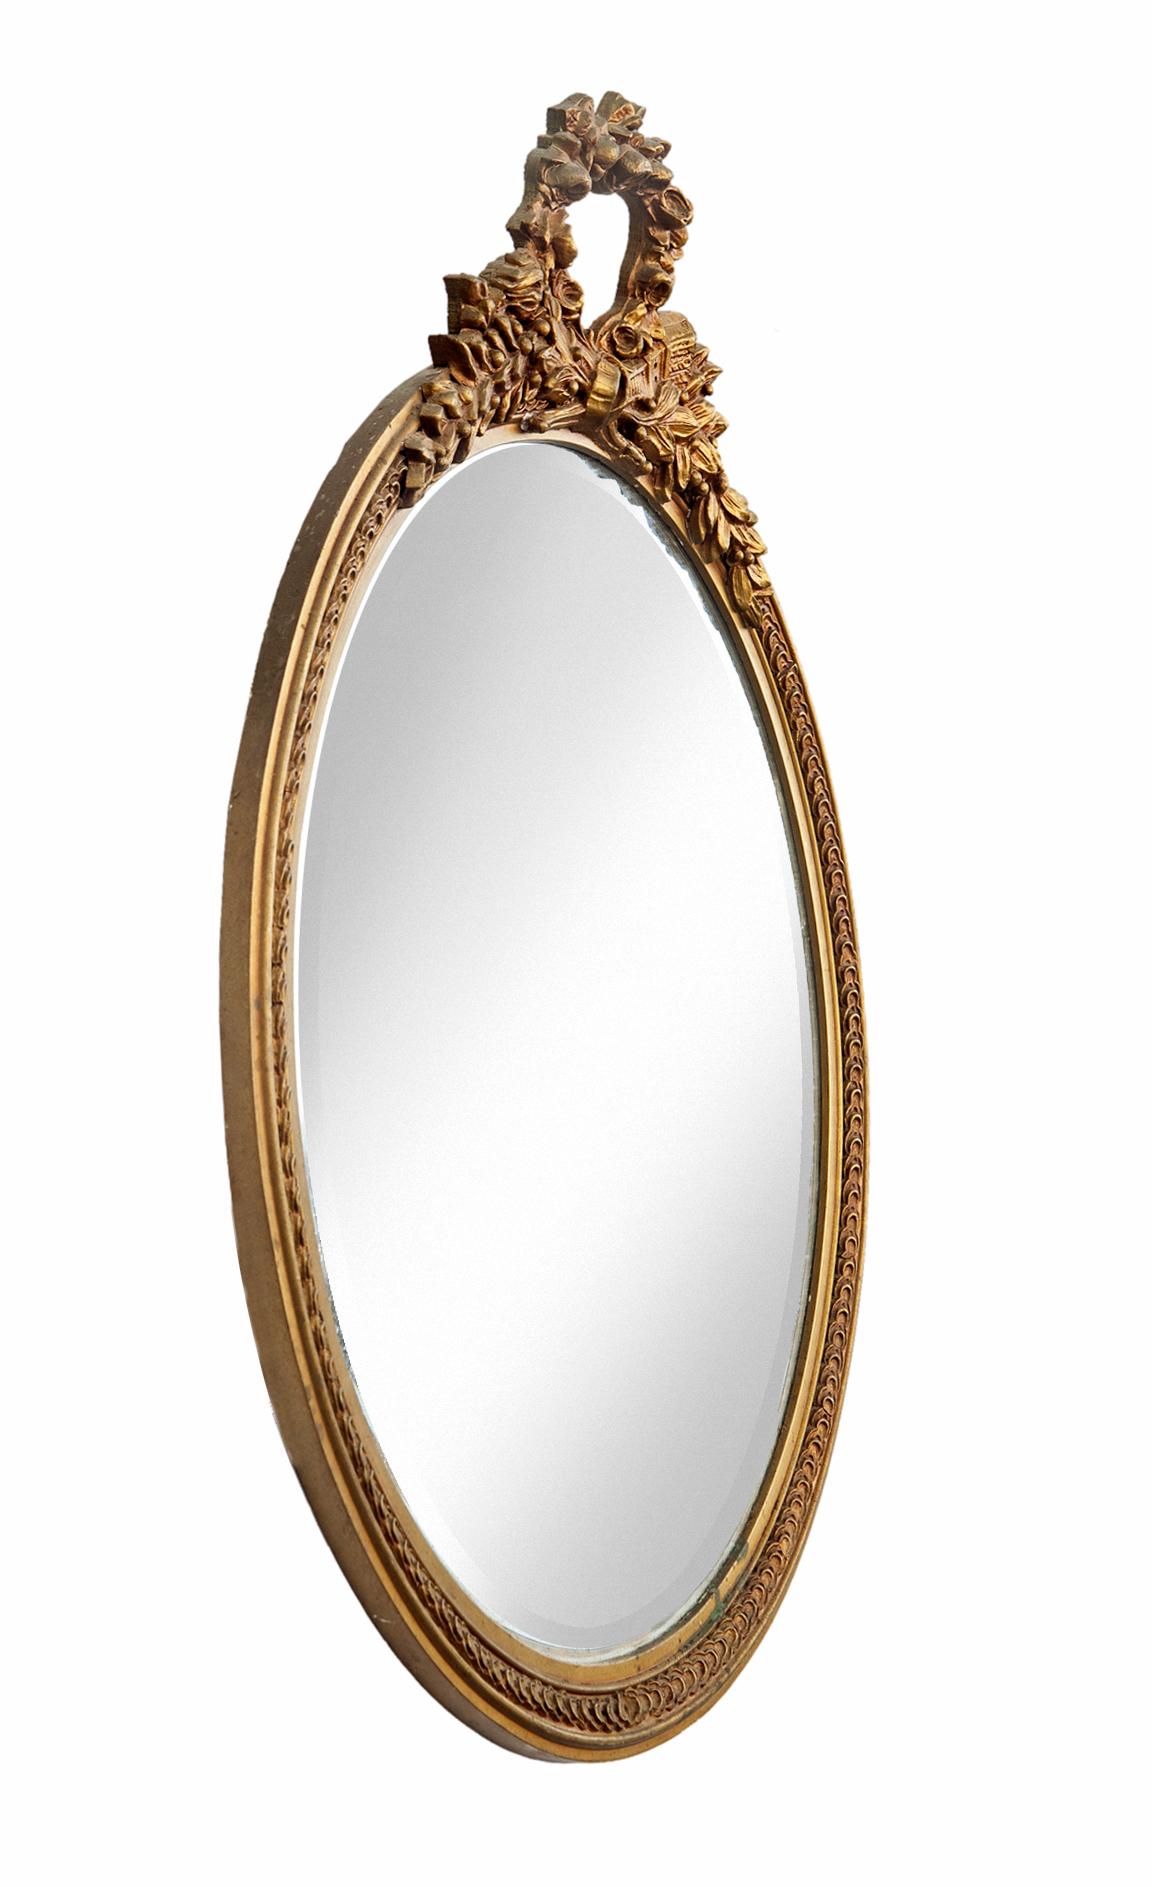 antique round gold mirror